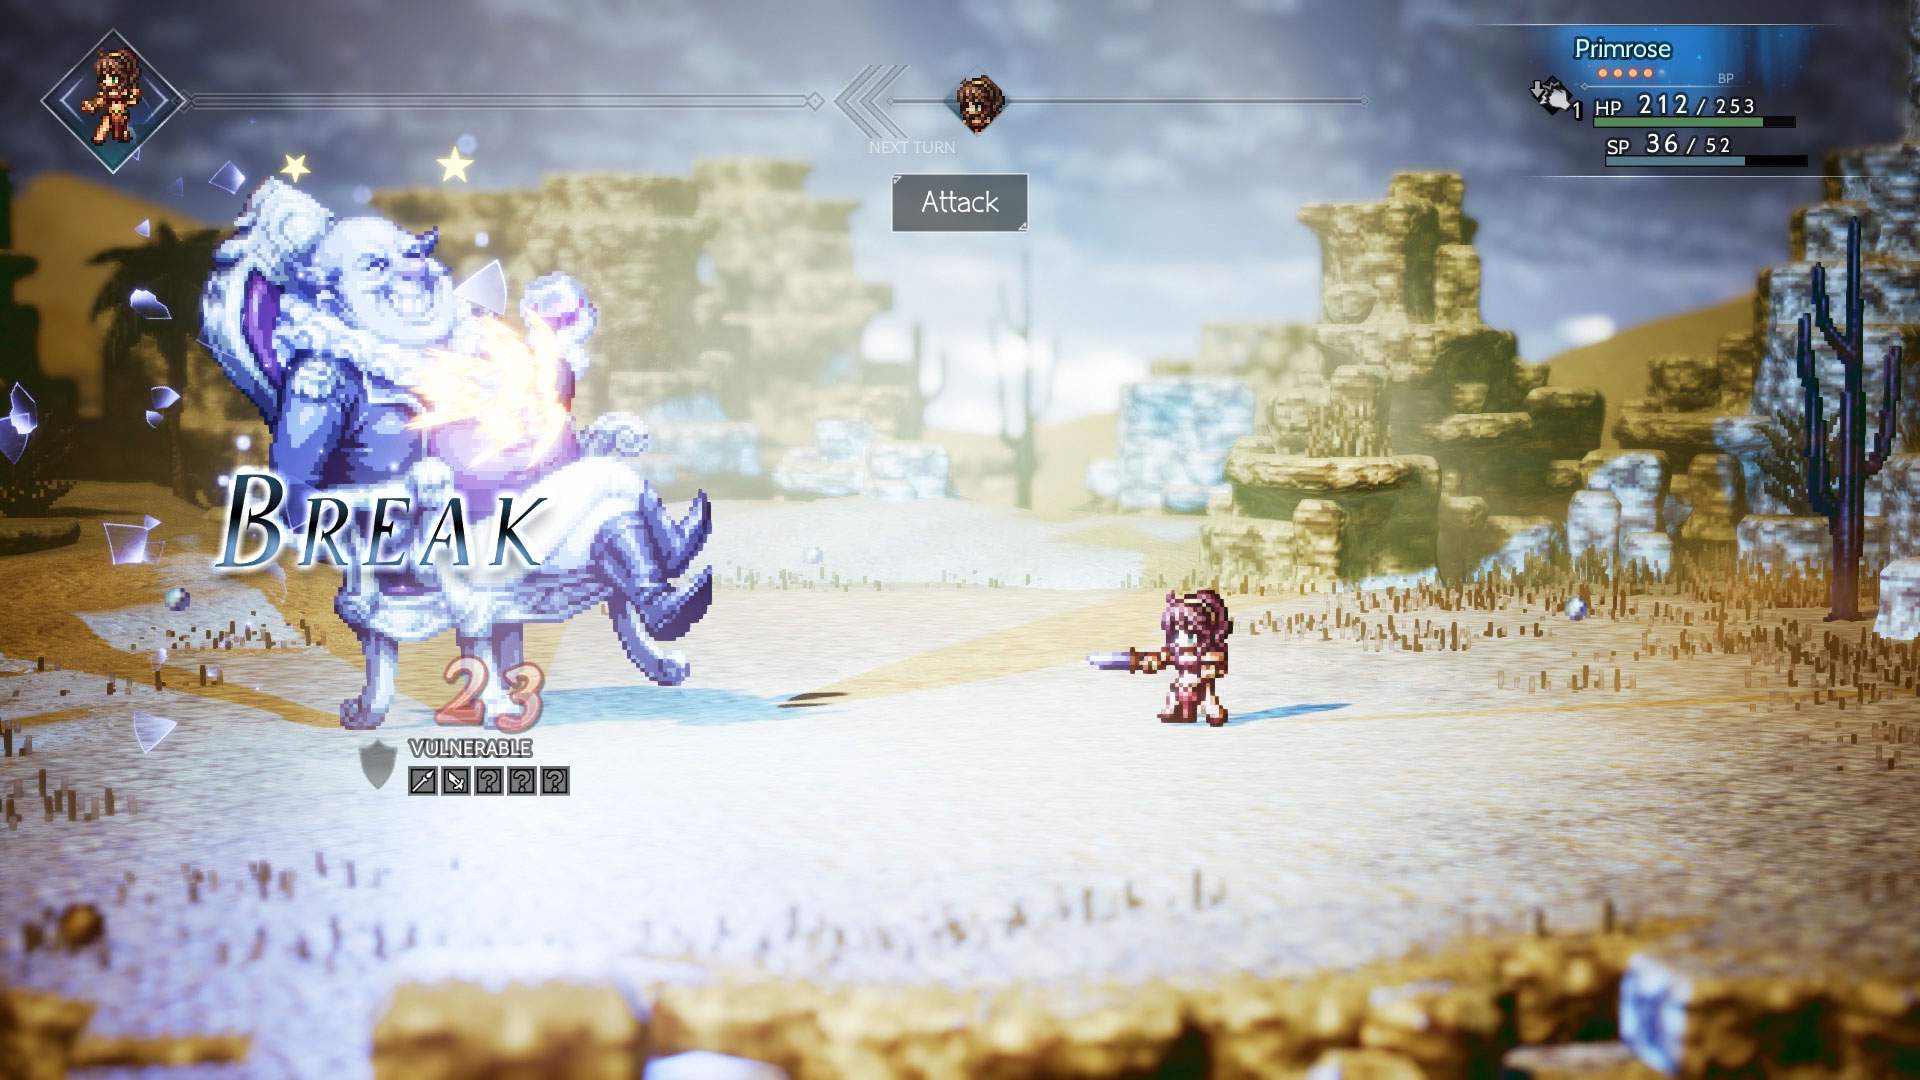 Capture d'écran d'un combat au cours duquel Primrose affronte un ennemi imposant dans le désert.